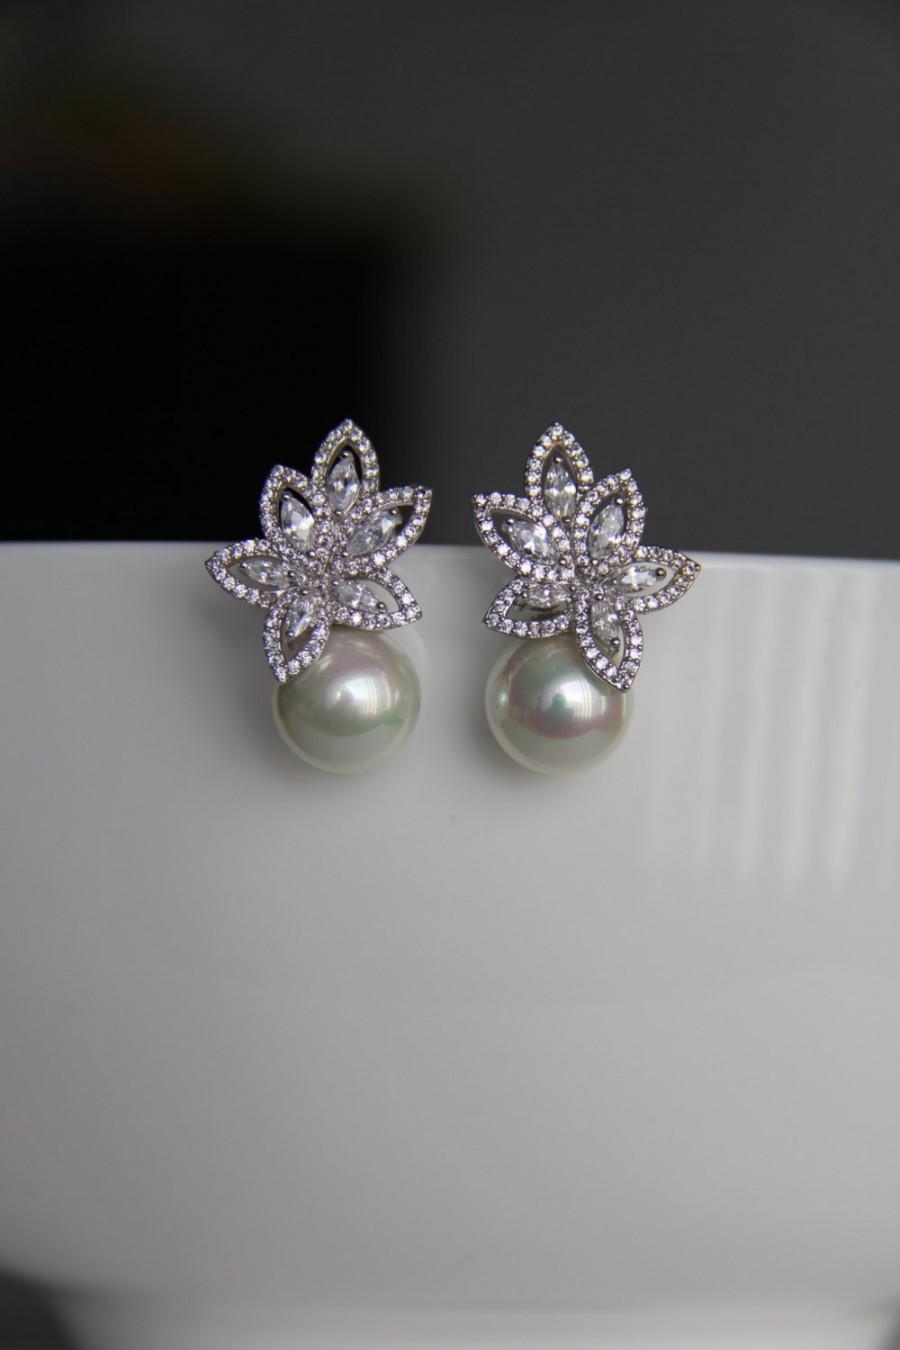 Mariage - Bridal earrings, cz earrings, wedding earrings, bridesmaid earrings, bridal jewelry, wedding jewelry, cz jewelry, dangley earrings